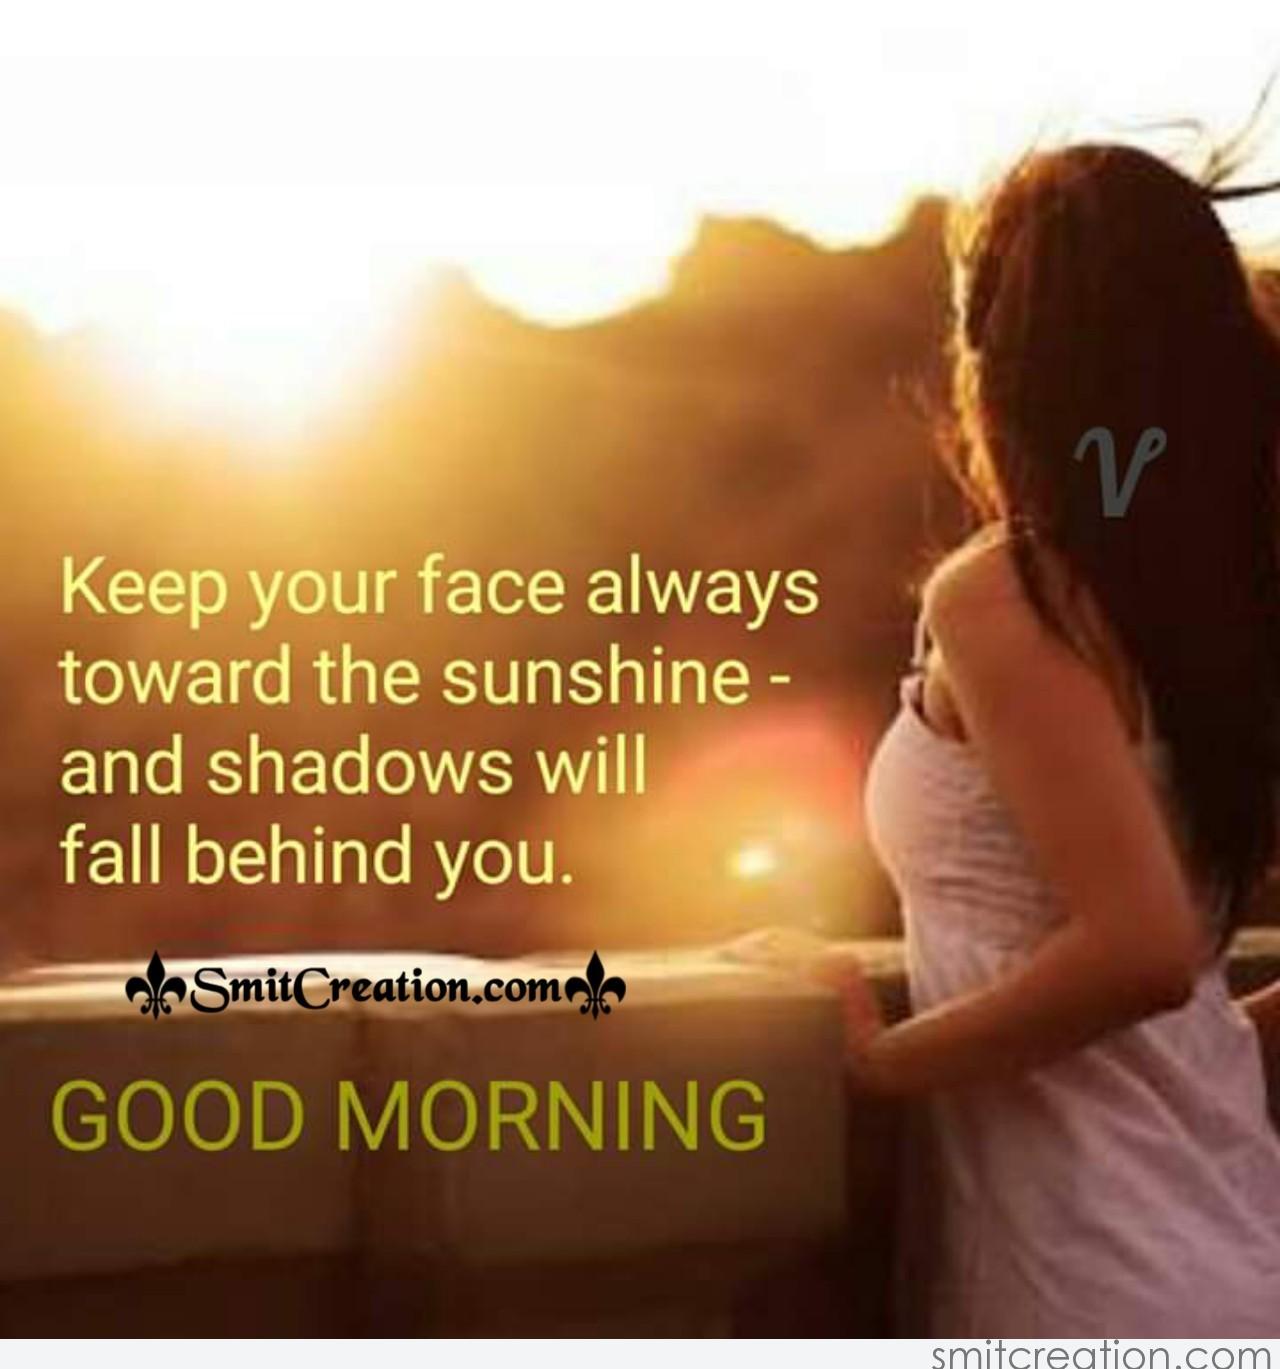 Good Morning Sunshine Quote - SmitCreation.com